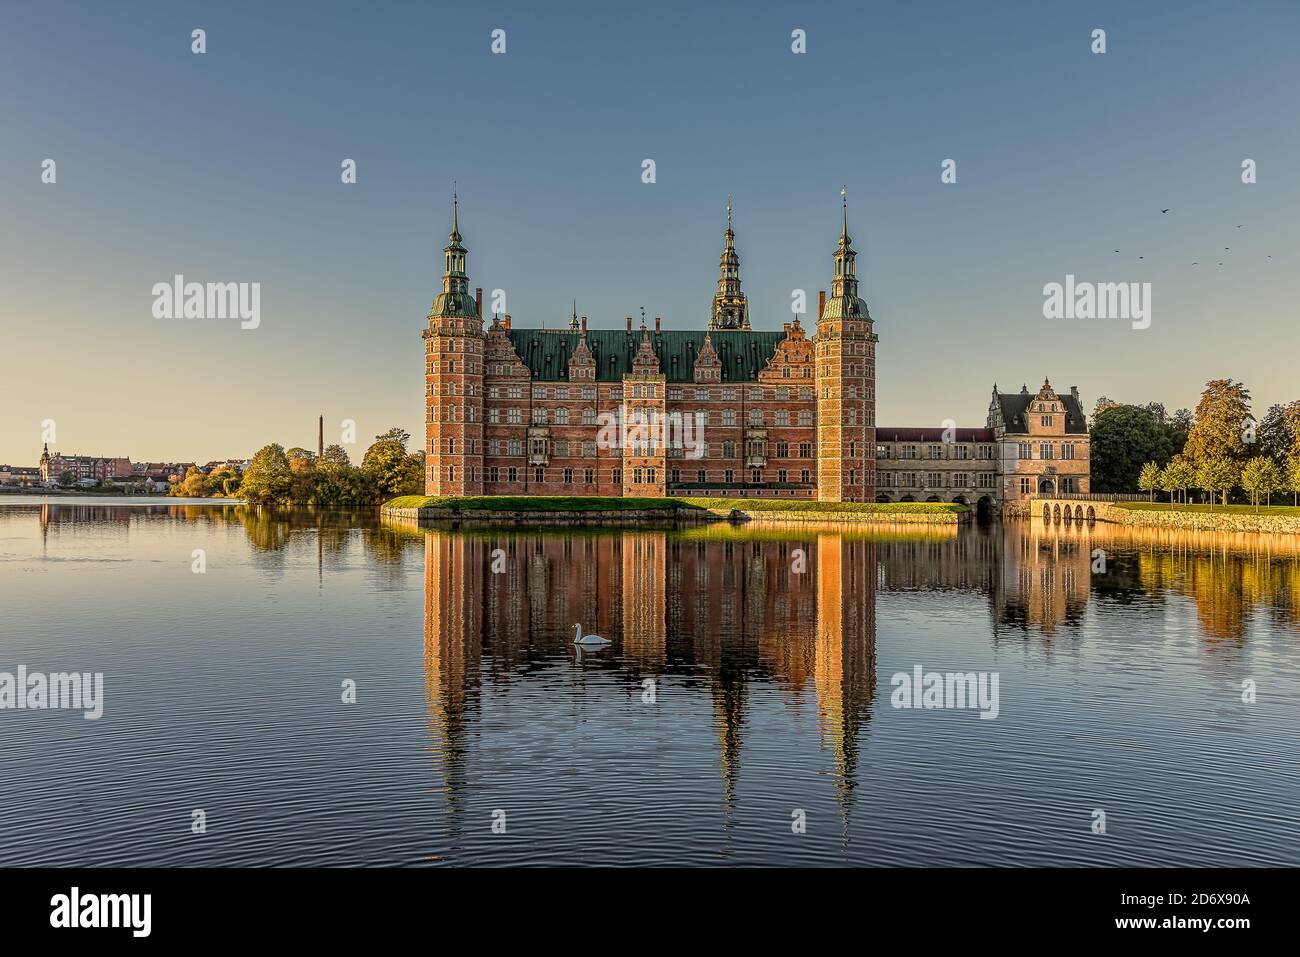 Il castello reale di Frederiksborg si illumina al sole e si riflette nel lago con un cigno da nuoto, Hillerod, Danimarca, 17 ottobre 2020 Foto Stock